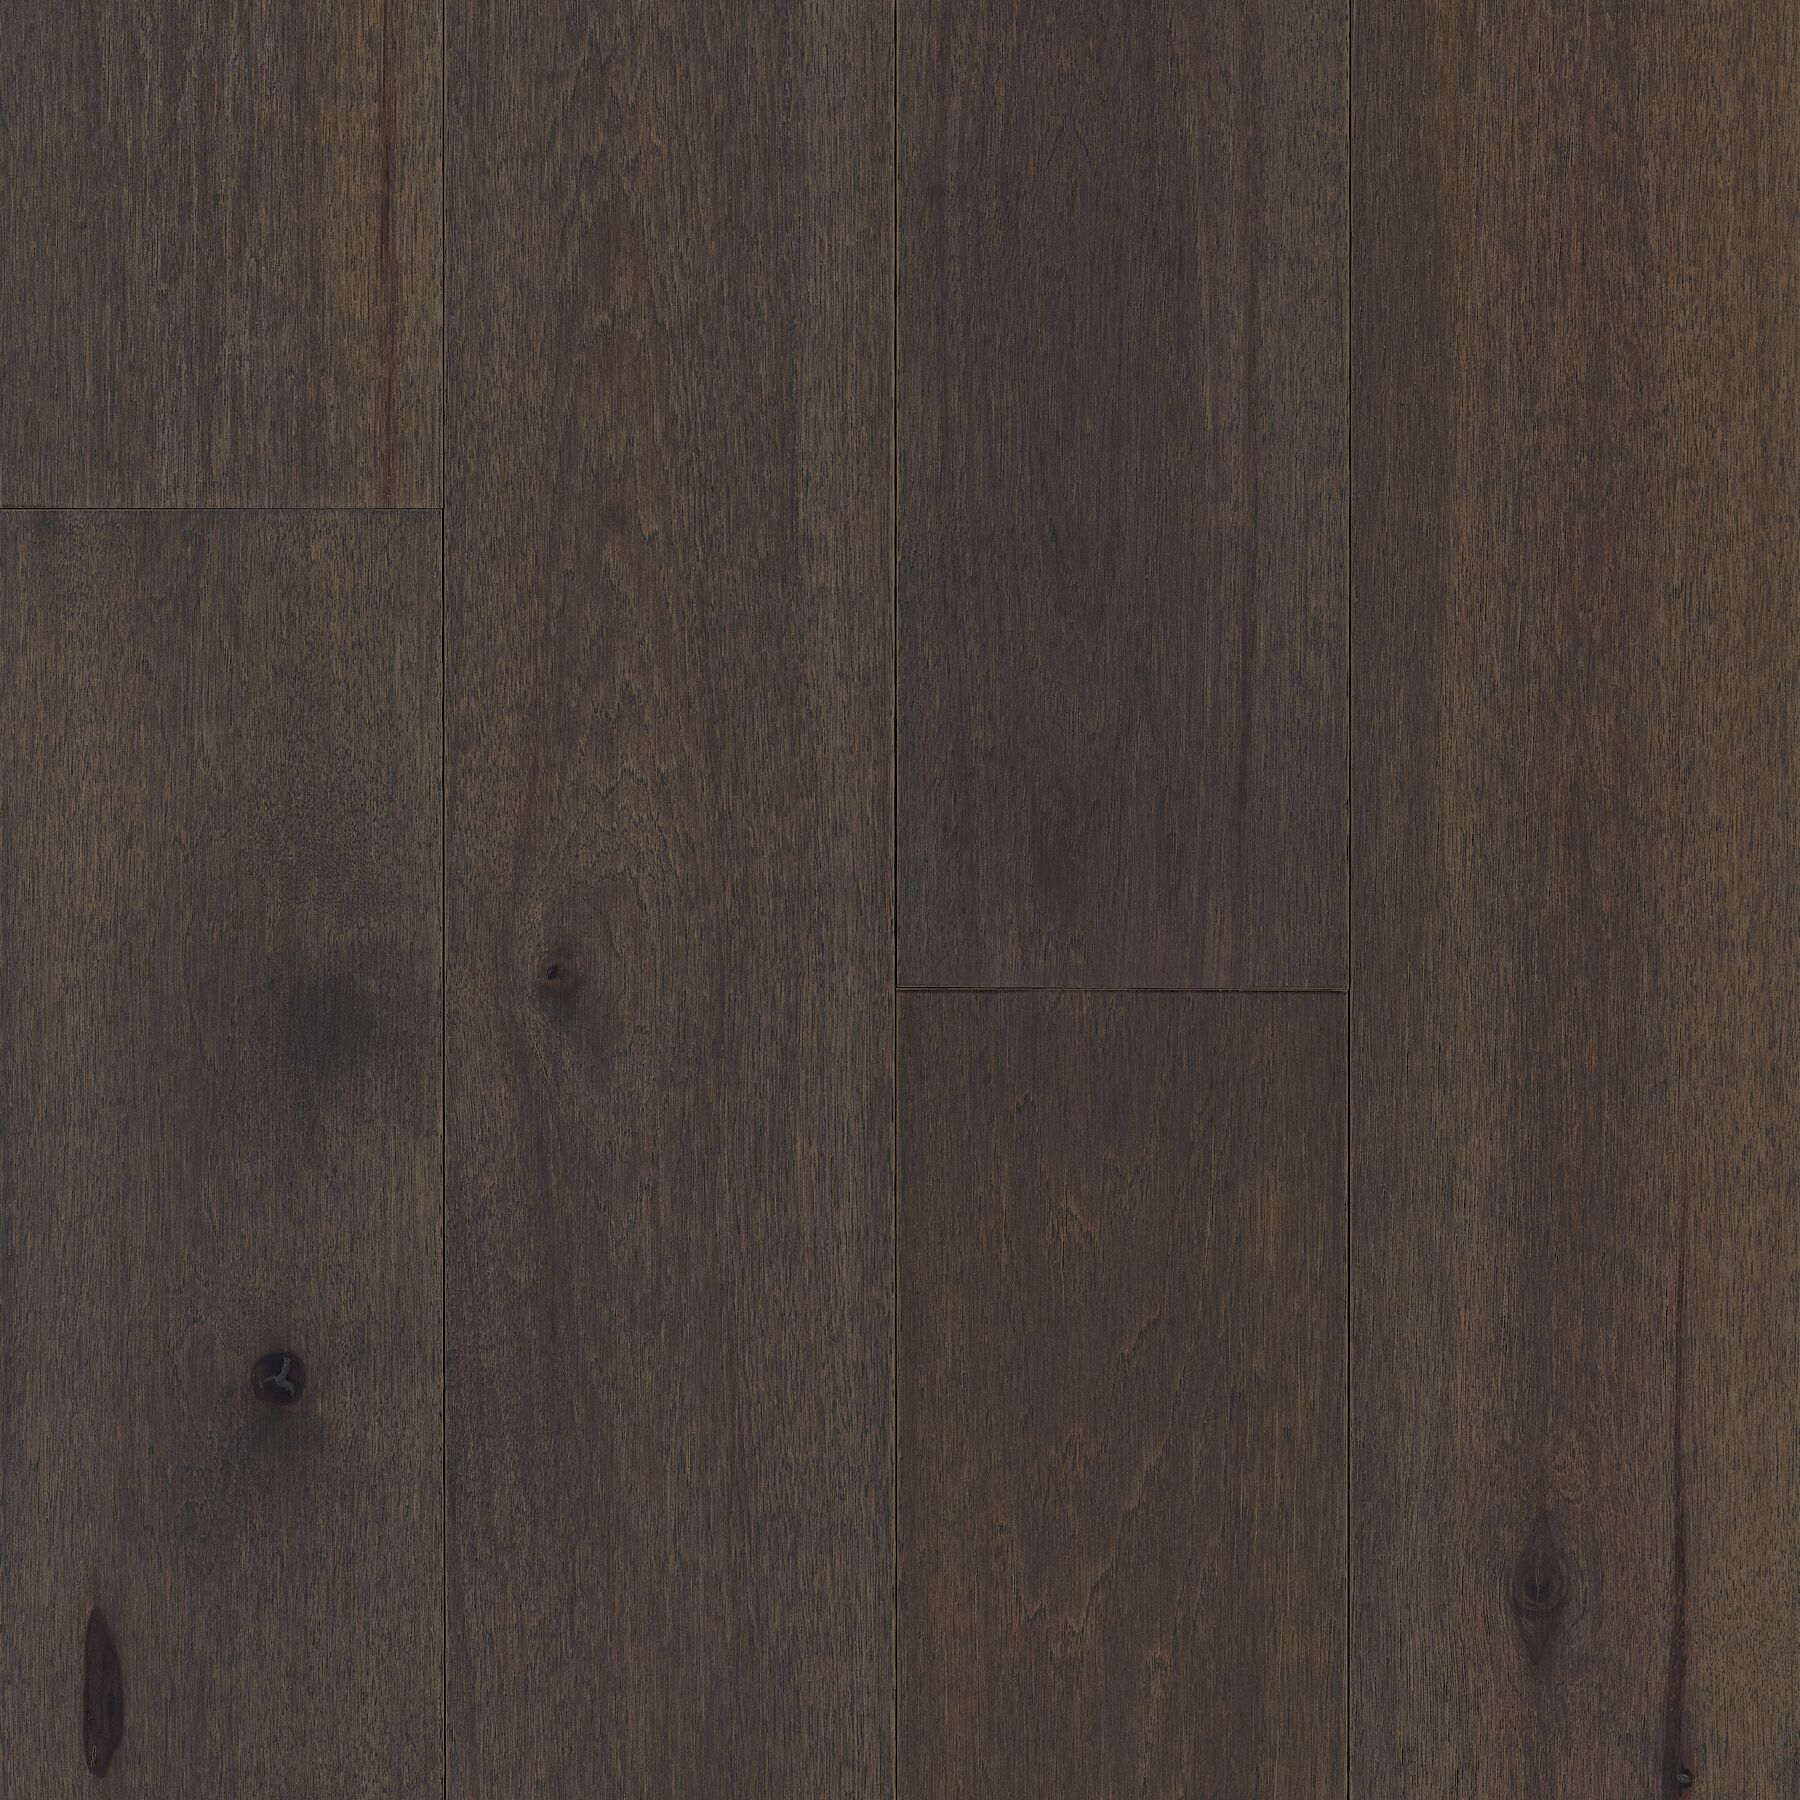 Bernese Dogwood Dog Friendly Hardwood Floors with hardened wood